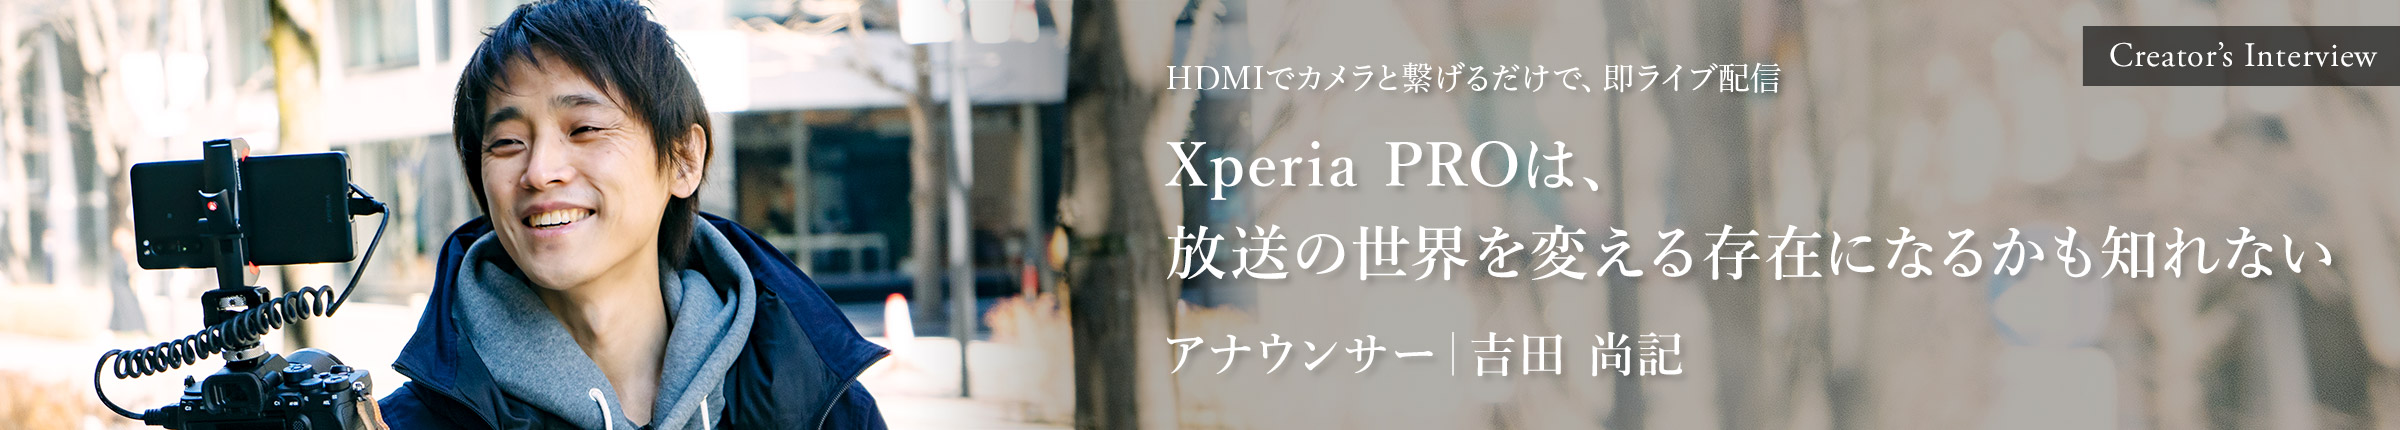 Creator's Interview HDMIでカメラと繋げるだけで、即ライブ配信 Xperia PROは、放送の世界を変える存在になるかも知れない アナウンサー 吉田 尚記